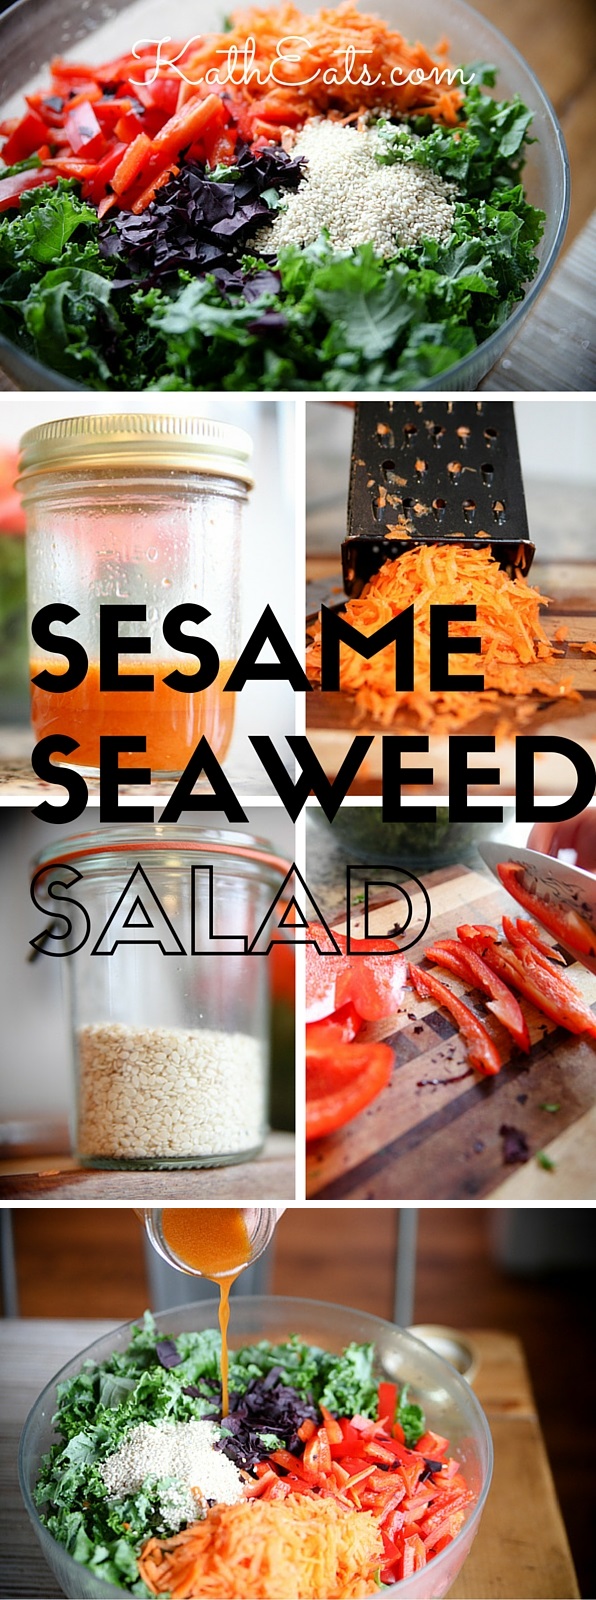 Seasame Seaweed Salad Pin